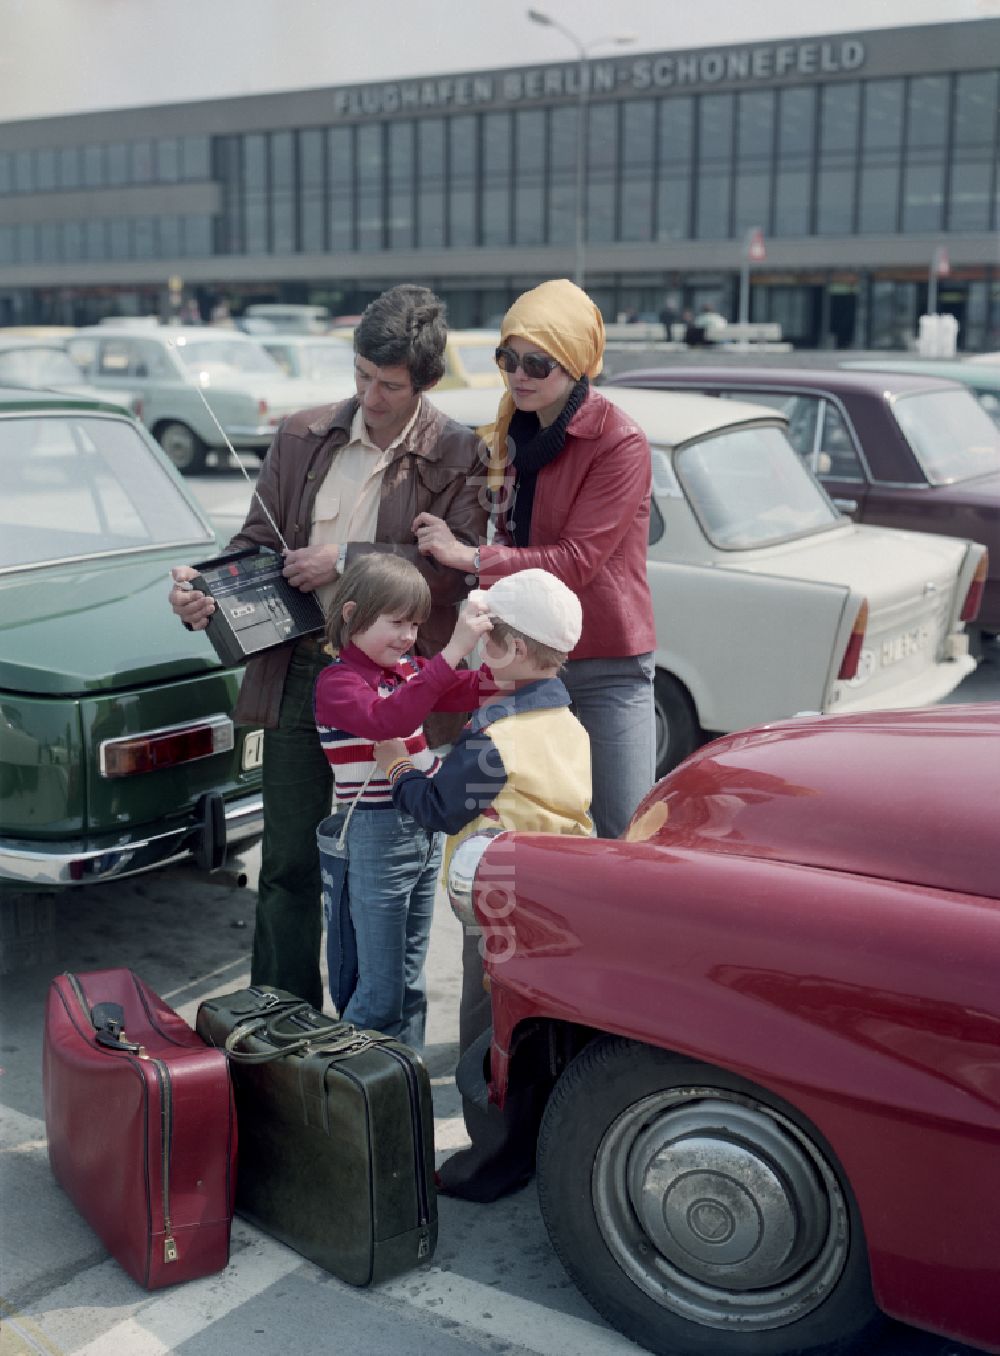 DDR-Fotoarchiv: Schönefeld - Familie am FlughafenSchönefeld im Bundesland Brandenburg auf dem Gebiet der ehemaligen DDR, Deutsche Demokratische Republik